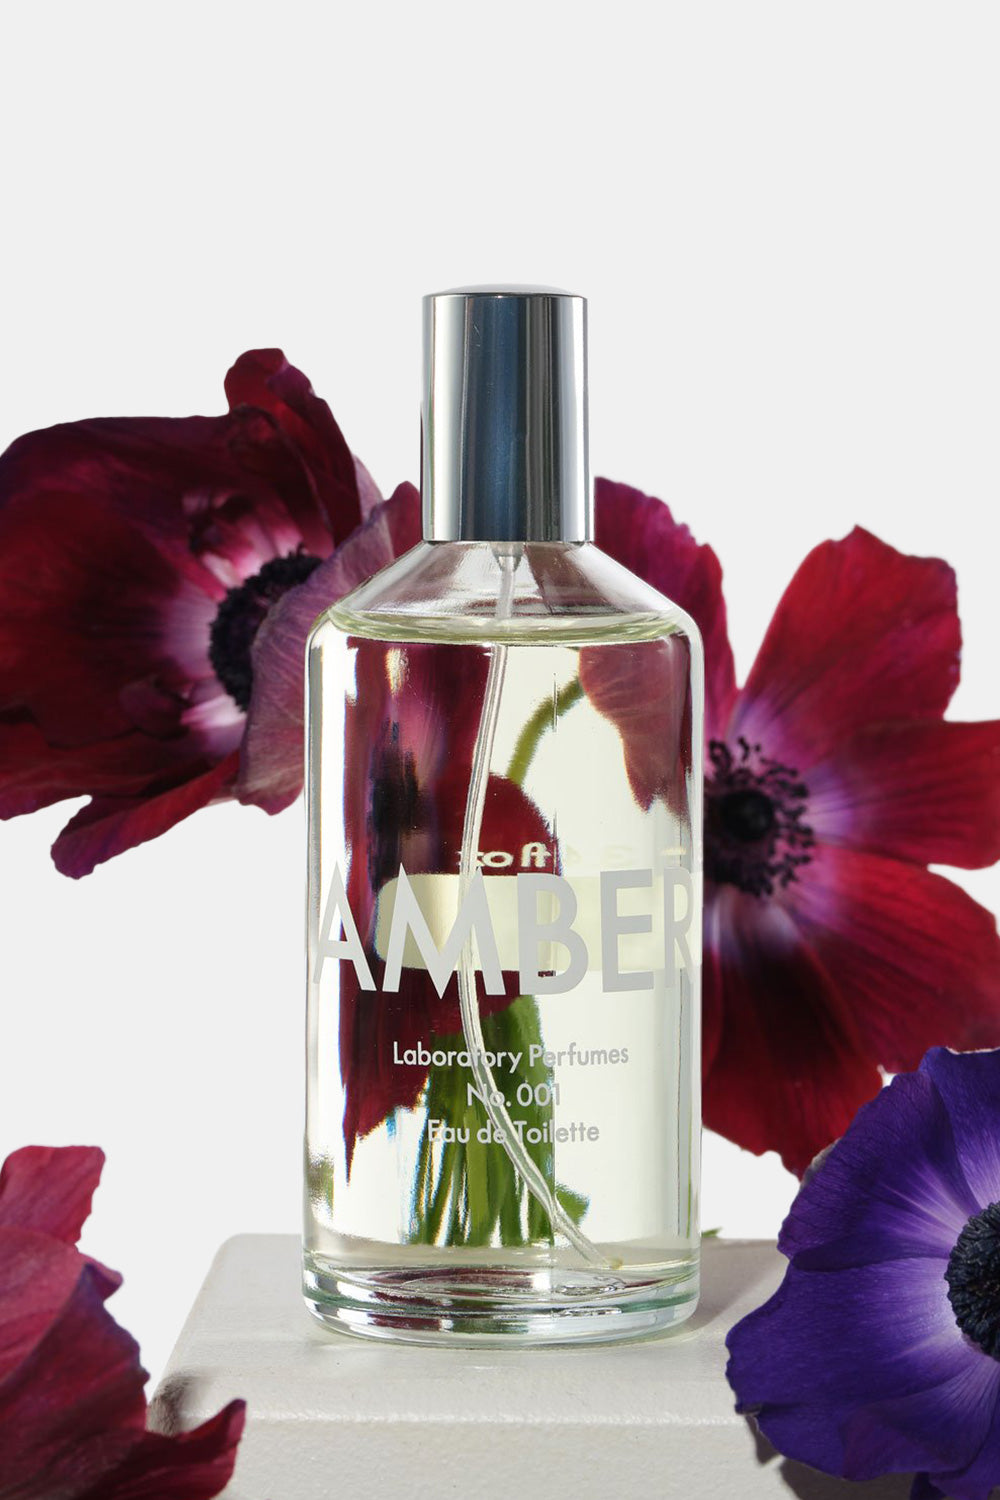 Laboratory Perfumes Amber Eau de Toilette